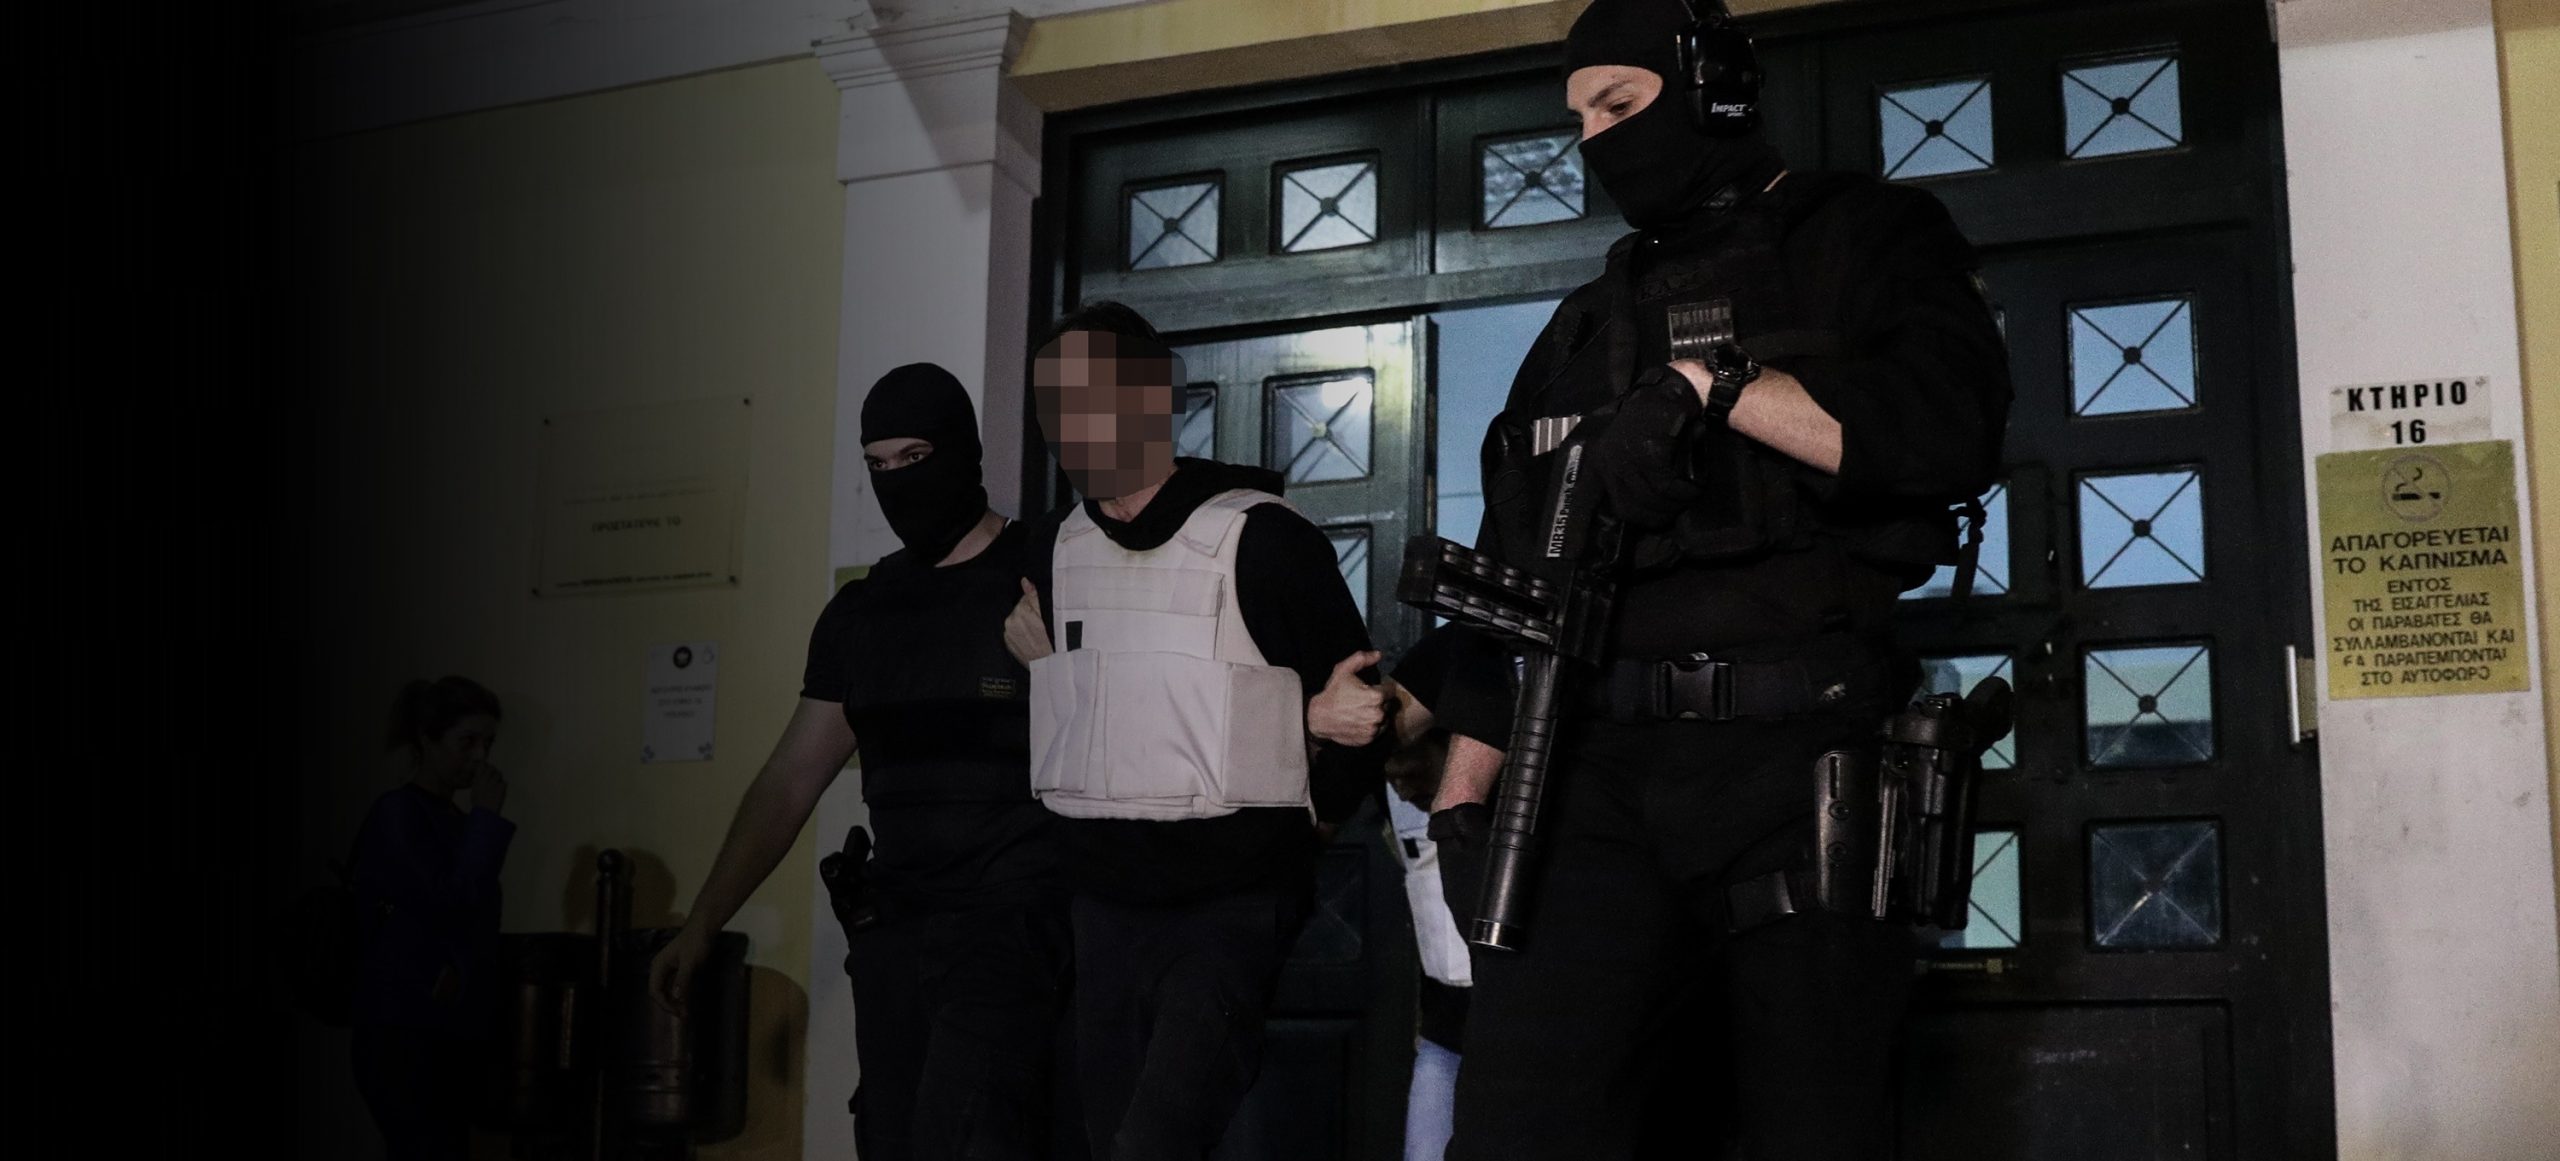 Επαναστατική Αυτοάμυνα: Ο καταζητούμενος τρομοκράτης ανάρτησε κείμενο για να «αθωώσει» τους δύο συλληφθέντες